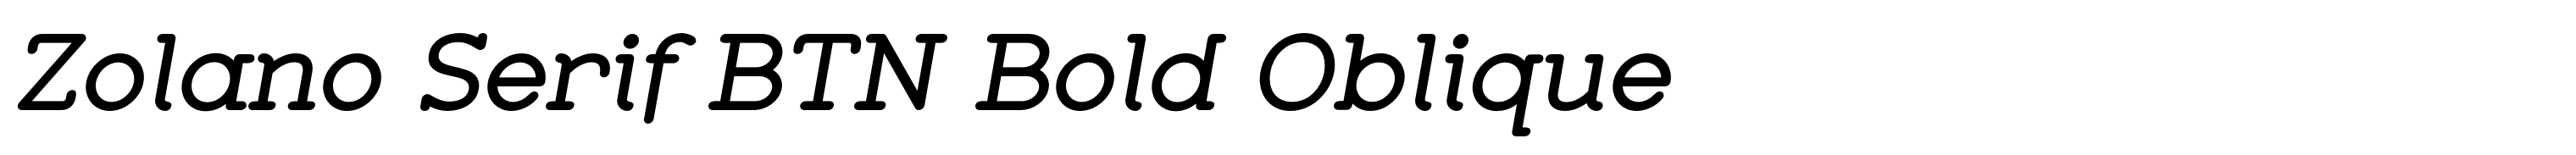 Zolano Serif BTN Bold Oblique